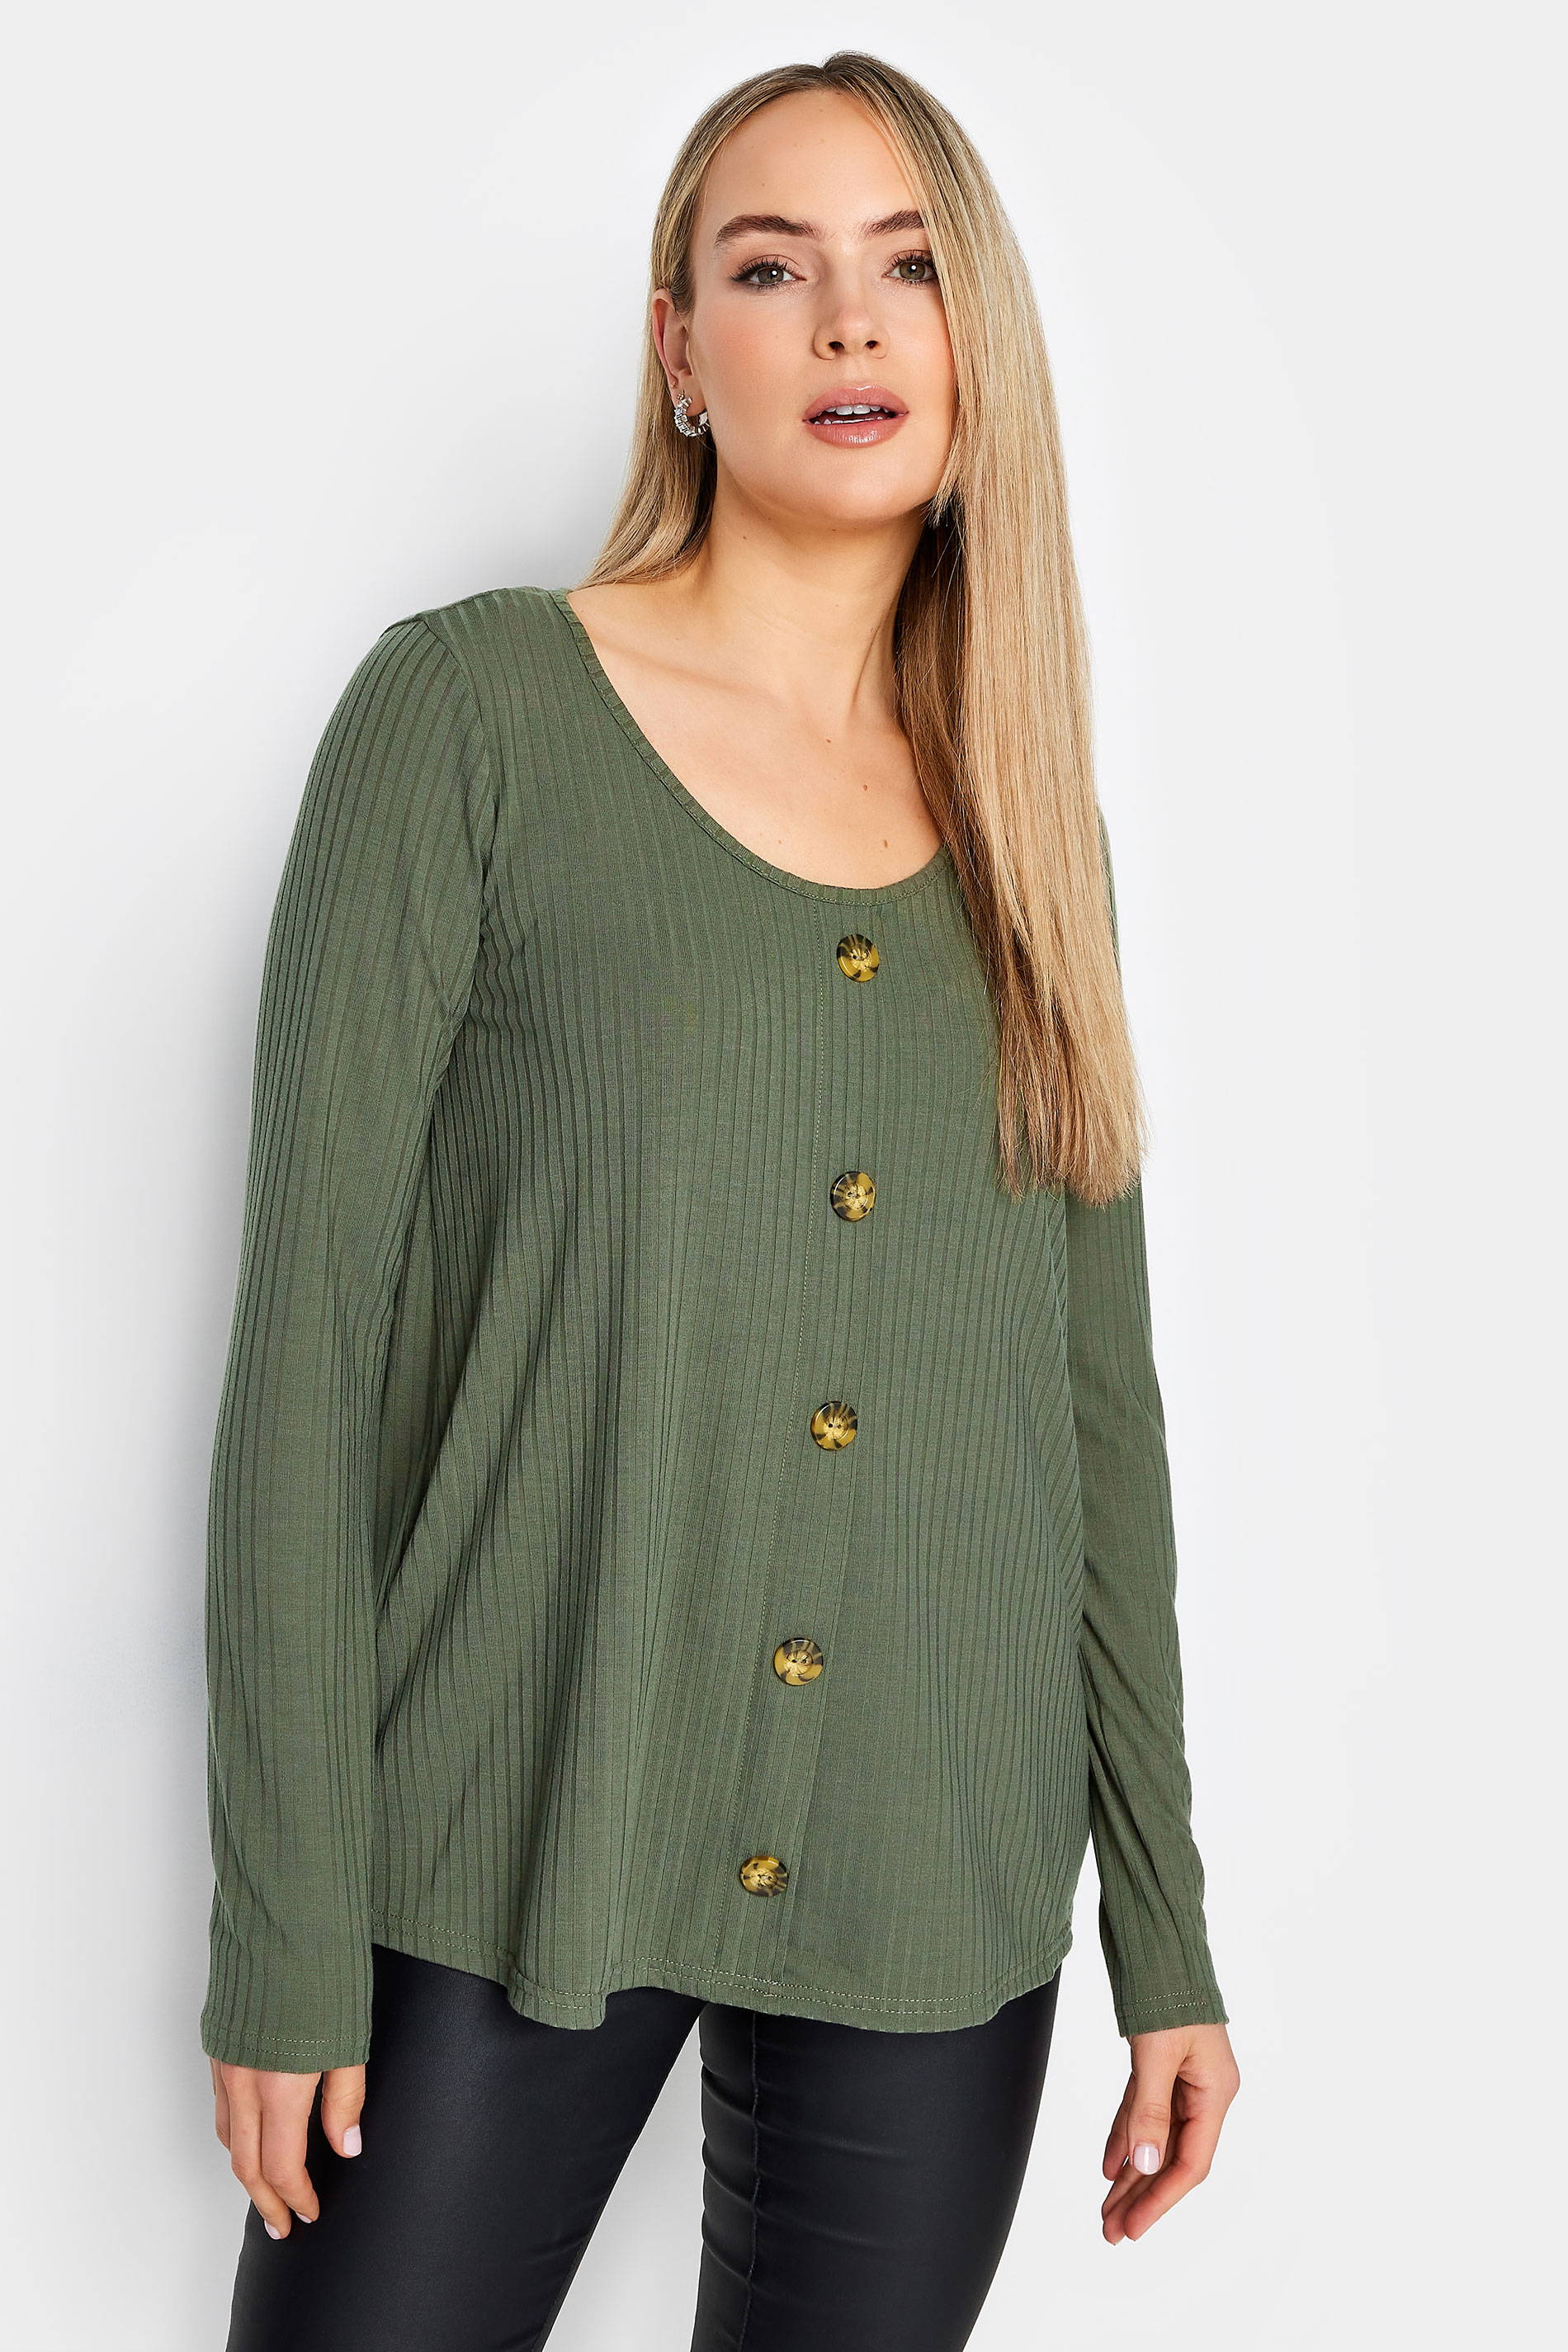 LTS Tall Women's Khaki Green Button Front Top | Long Tall Sally 1